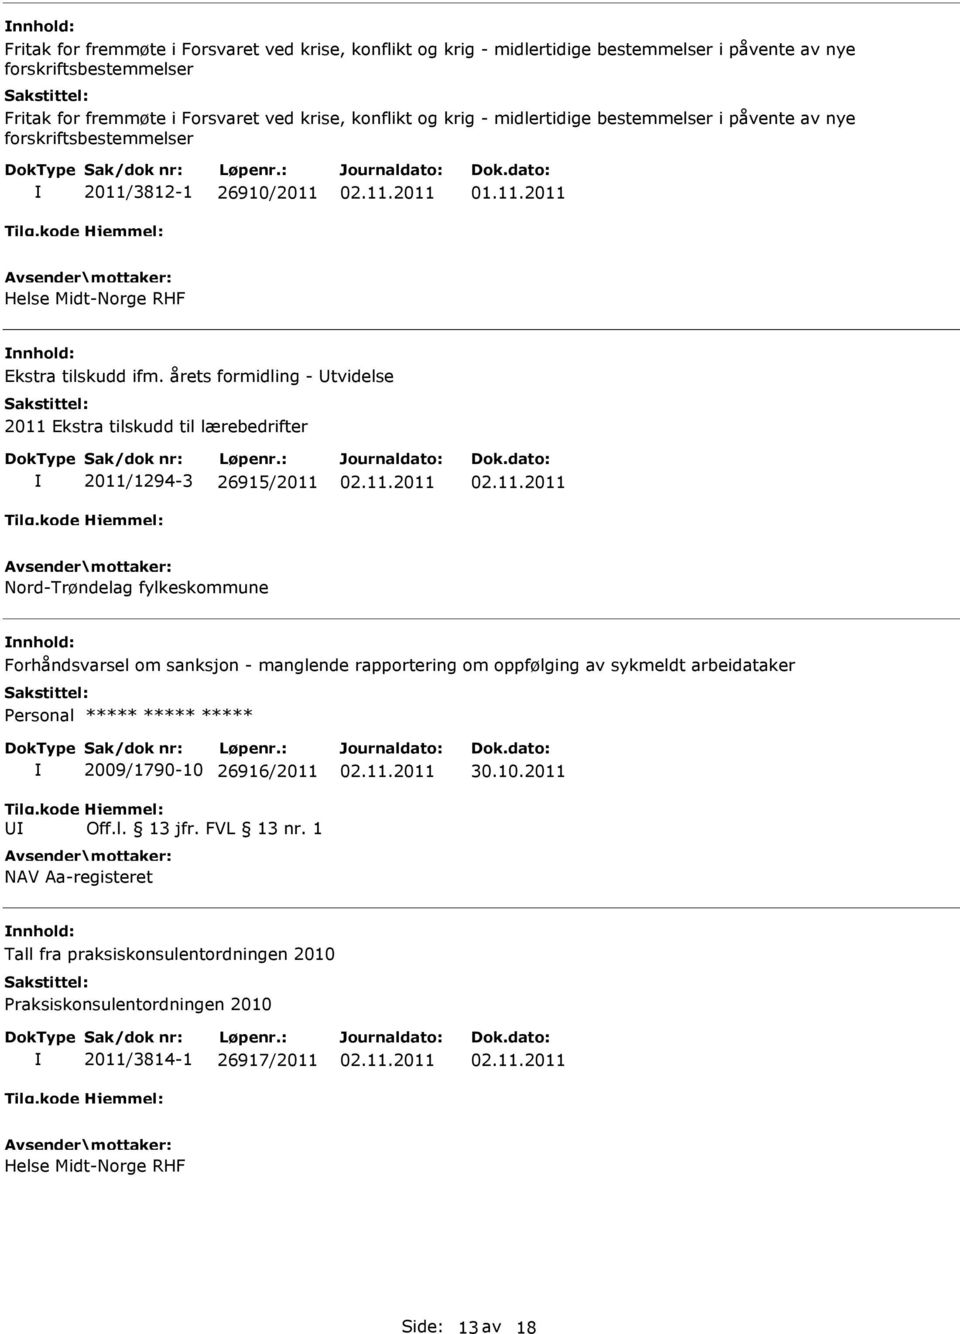 årets formidling - tvidelse 2011 Ekstra tilskudd til lærebedrifter 2011/1294-3 26915/2011 Nord-Trøndelag fylkeskommune Forhåndsvarsel om sanksjon - manglende rapportering om oppfølging av